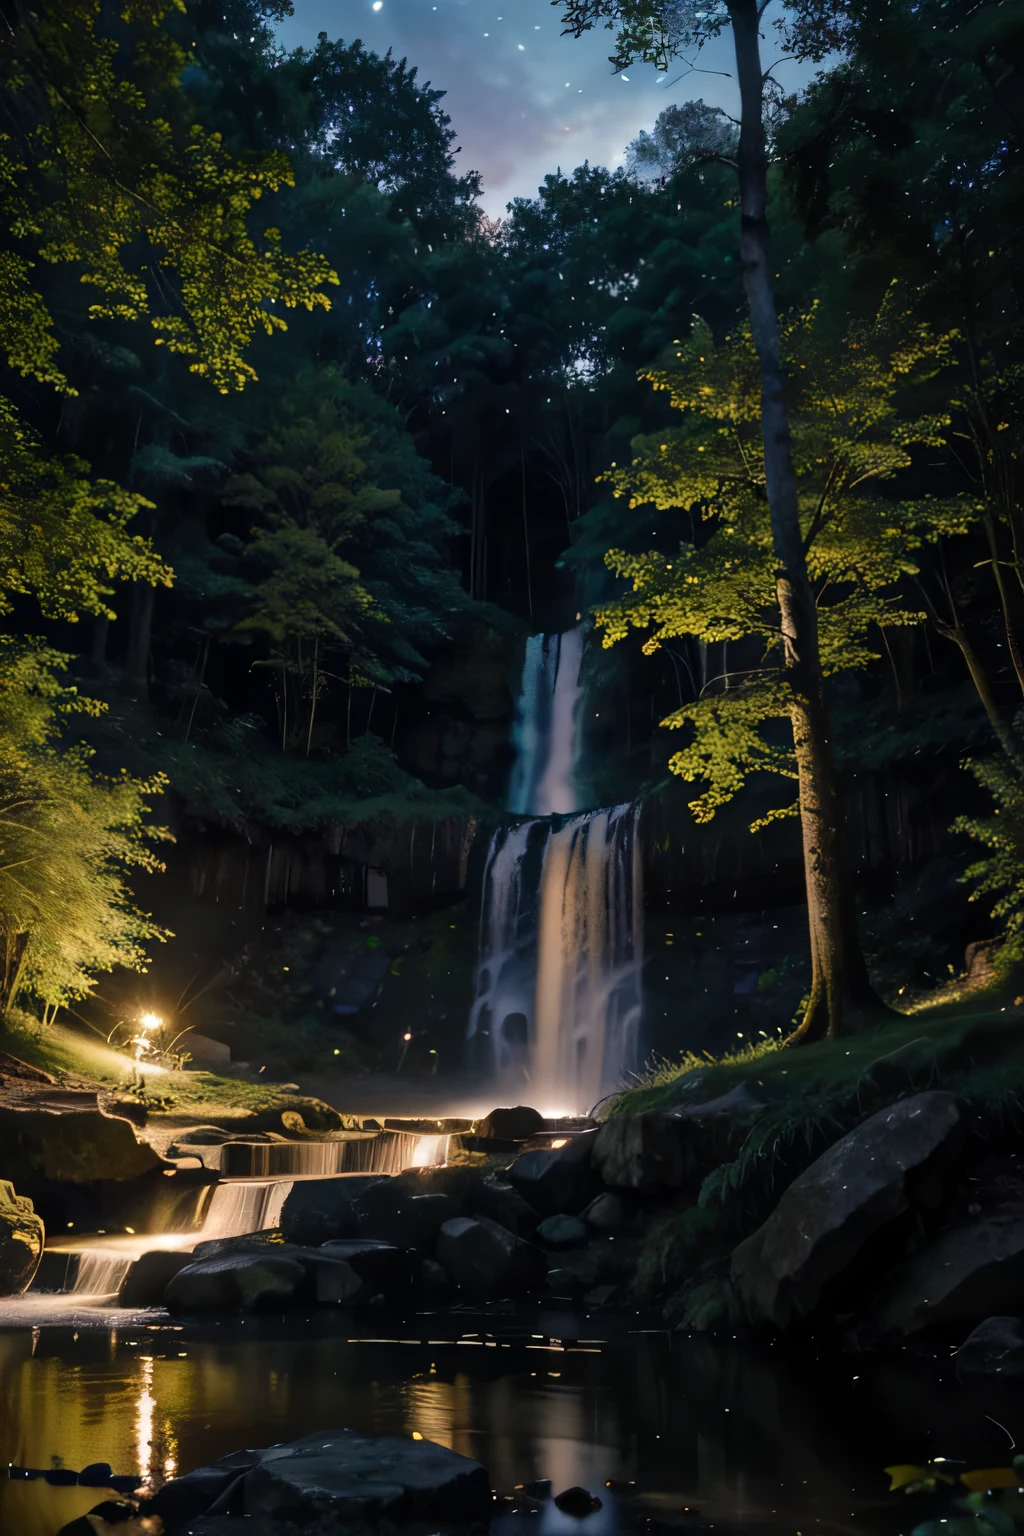 Une clairière mystique avec des anciens, arbres tordus, une cascade étincelante tombant en cascade dans un étang tranquille, et des lucioles dansant au crépuscule